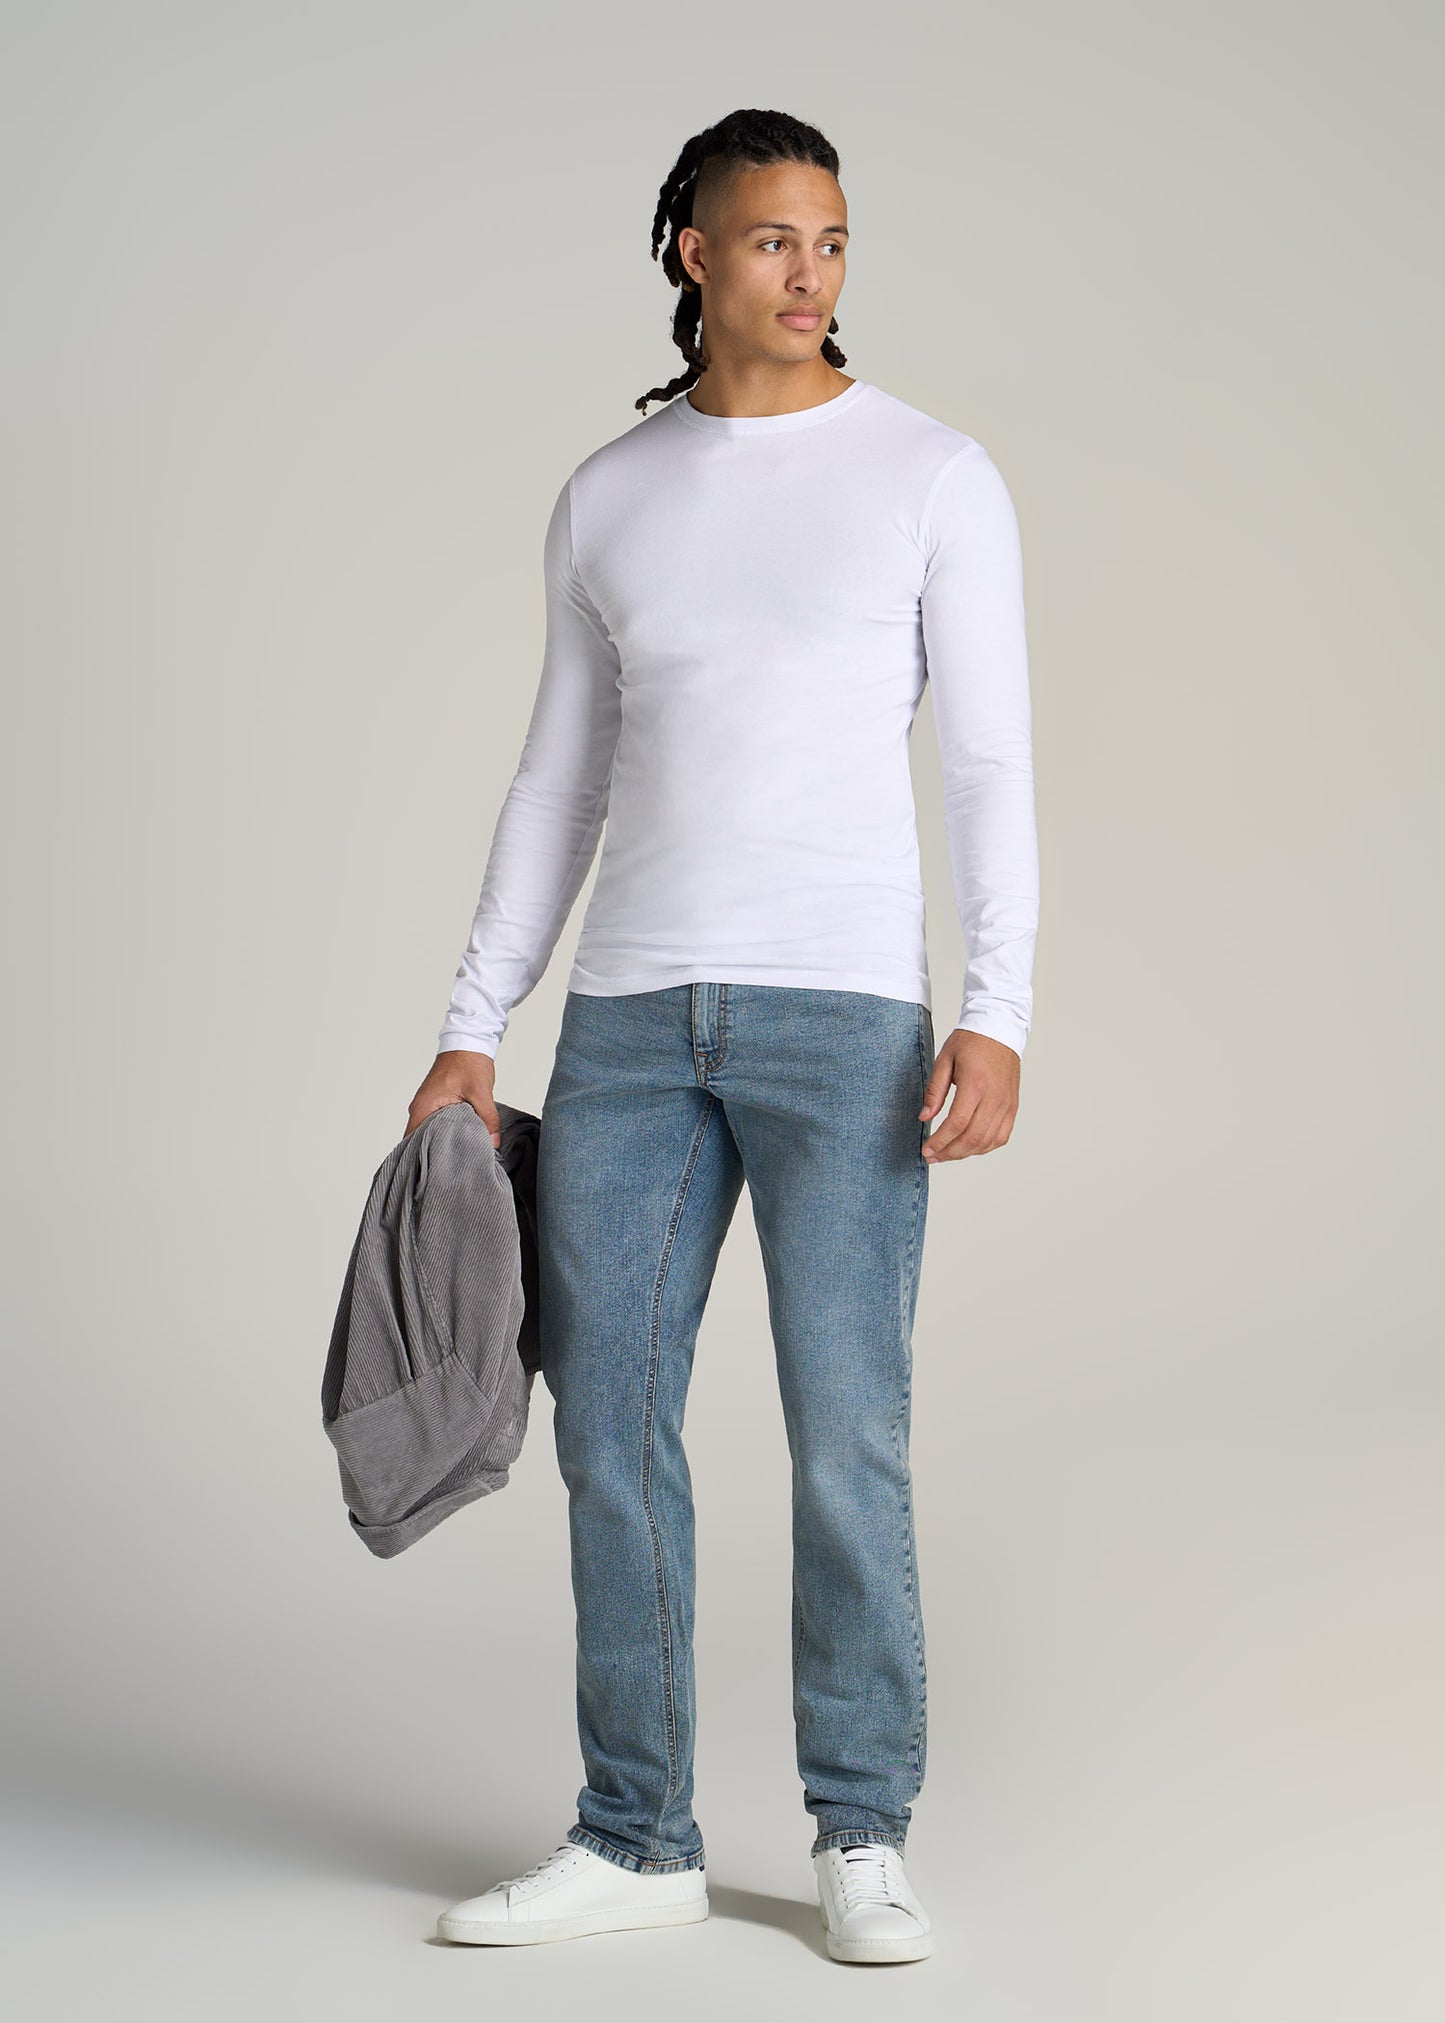 Original Essentials Slim-Fit Long Sleeve Tall Men's T-Shirt in Black S / Tall / Black